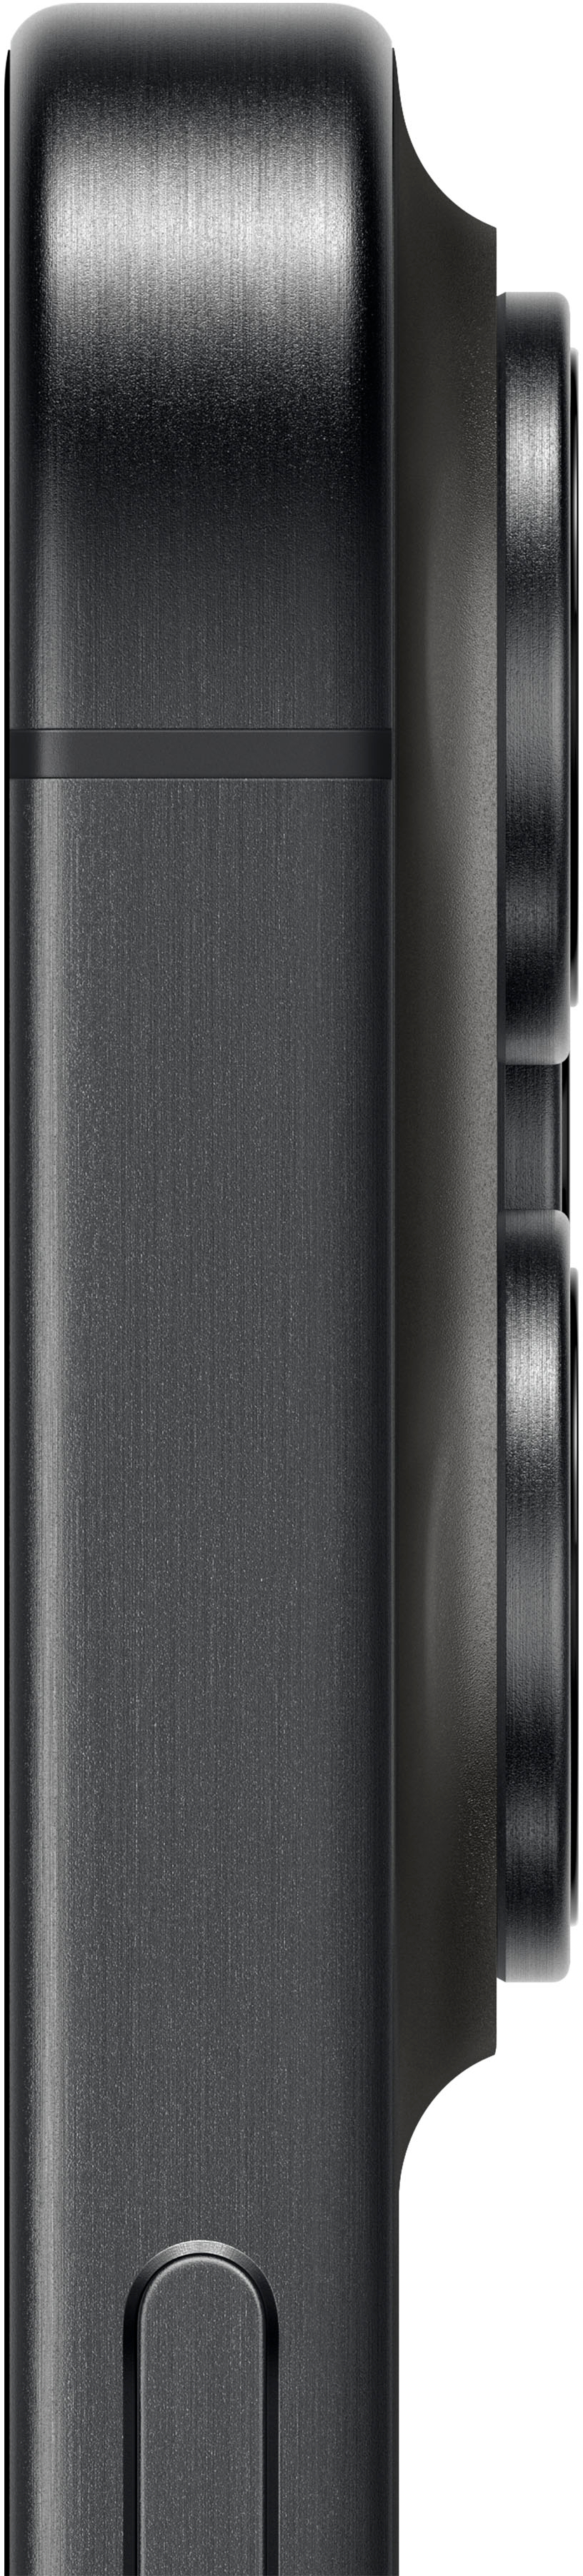 Apple iPhone 15 Pro Max 512GB Black Titanium (Verizon) MU6A3LL/A - Best Buy